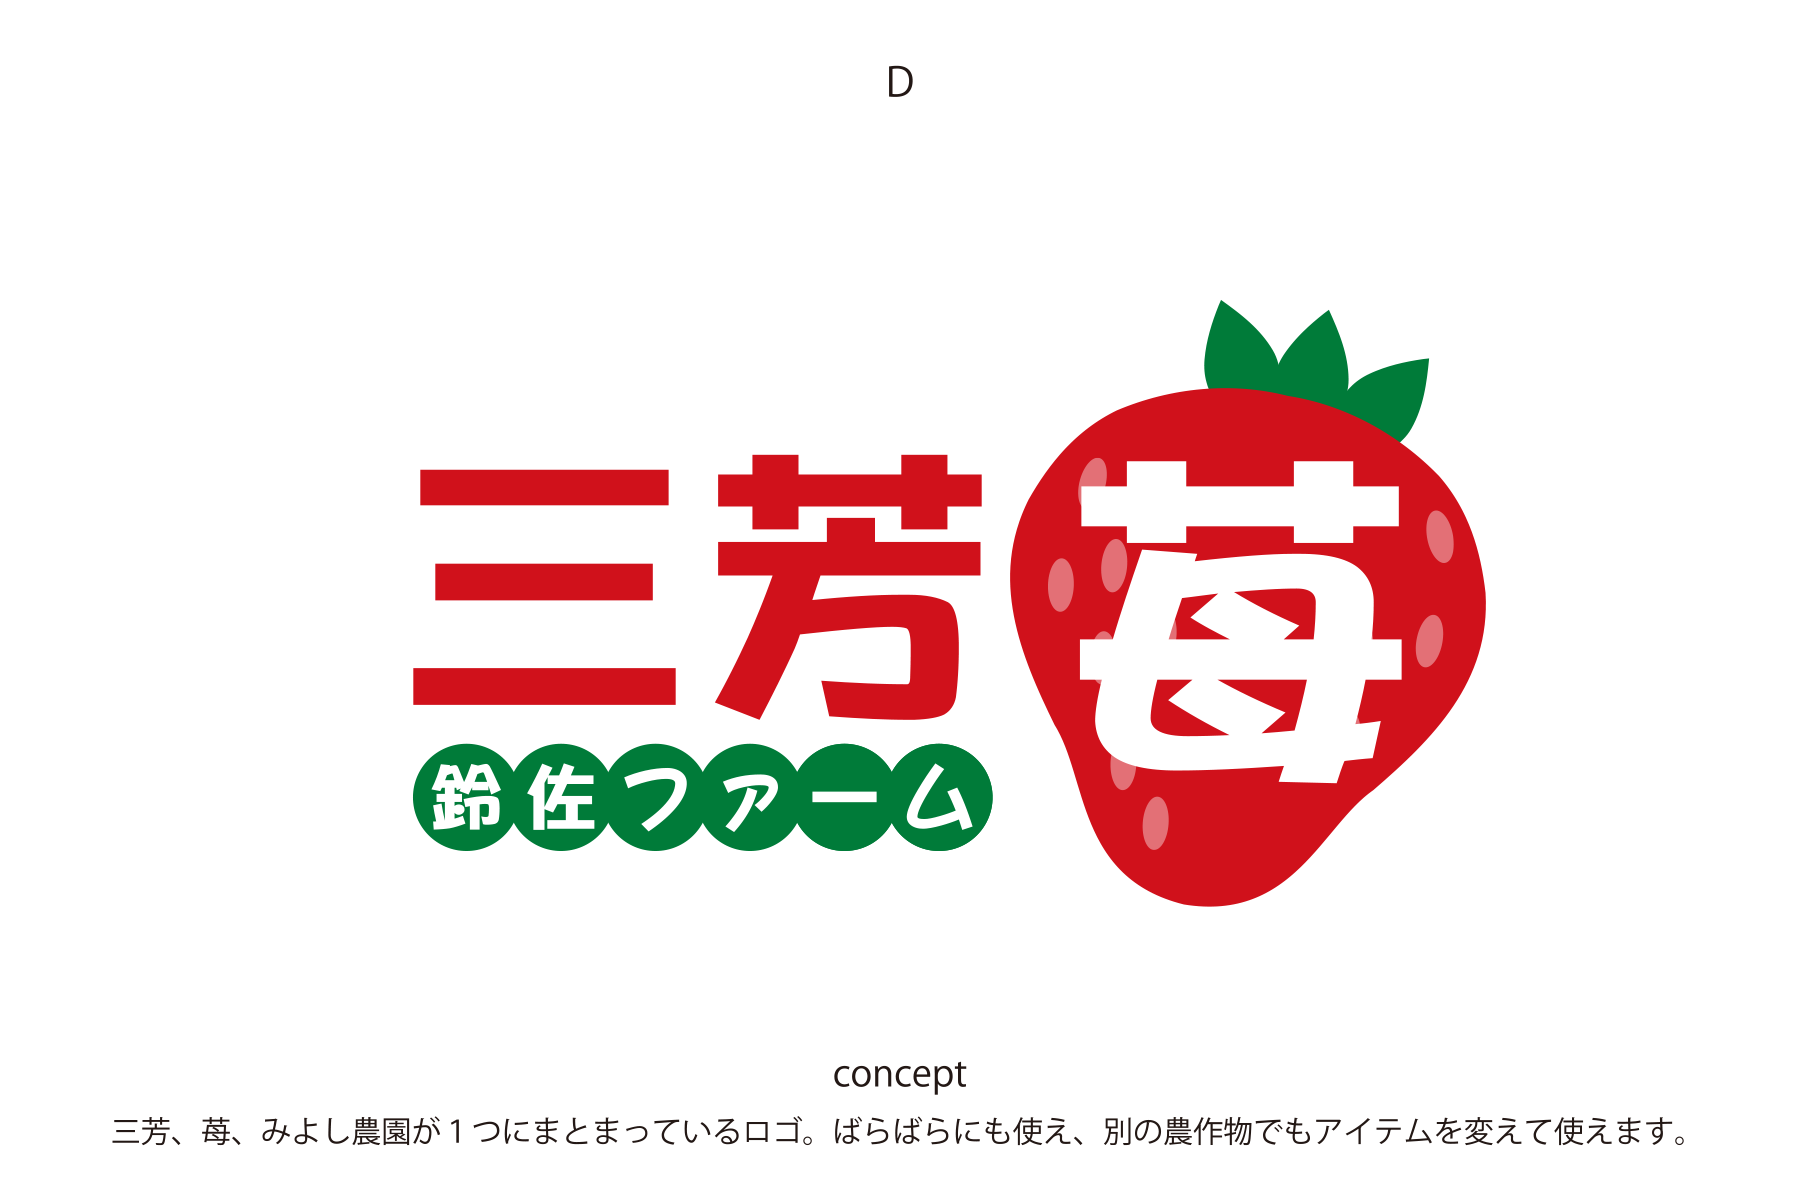 イチゴ農家の新ブランド「三芳苺®」